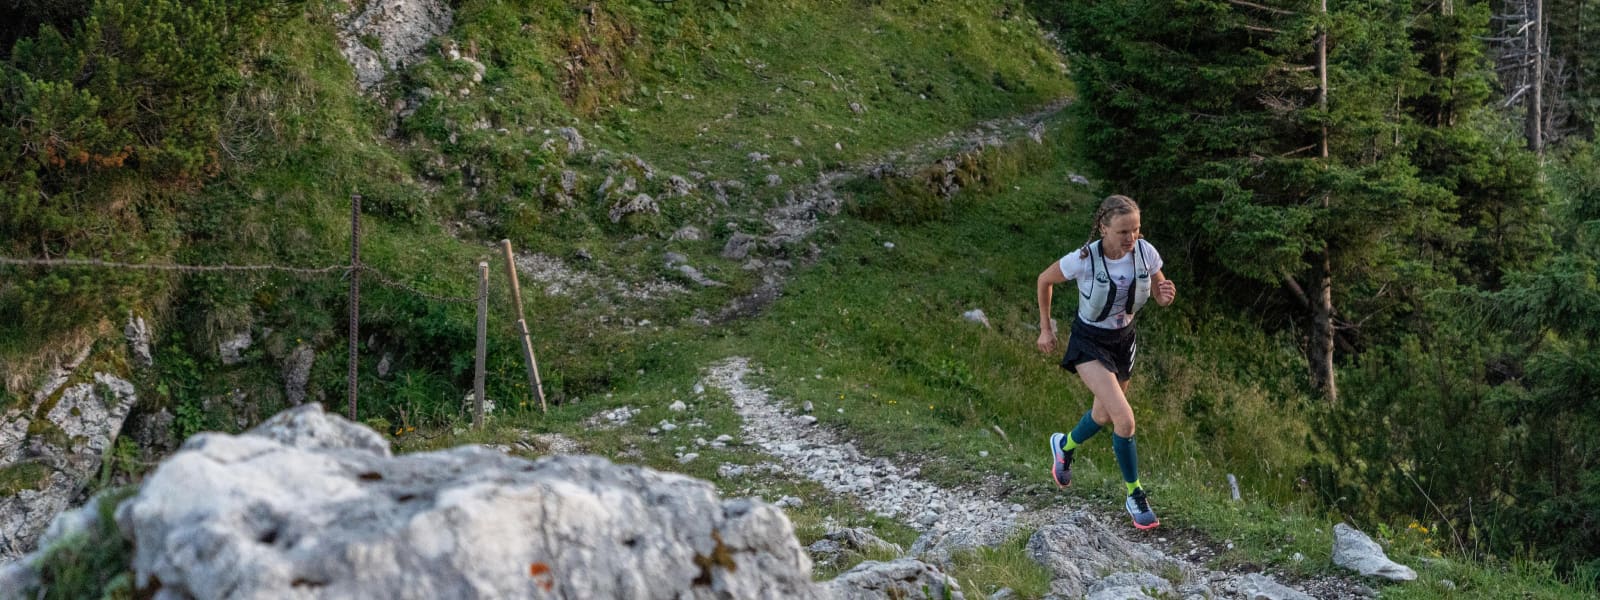 Läuferin hat Trail Run Socken an und joggt über ein steiniges, hügeliges Gelände im Wald